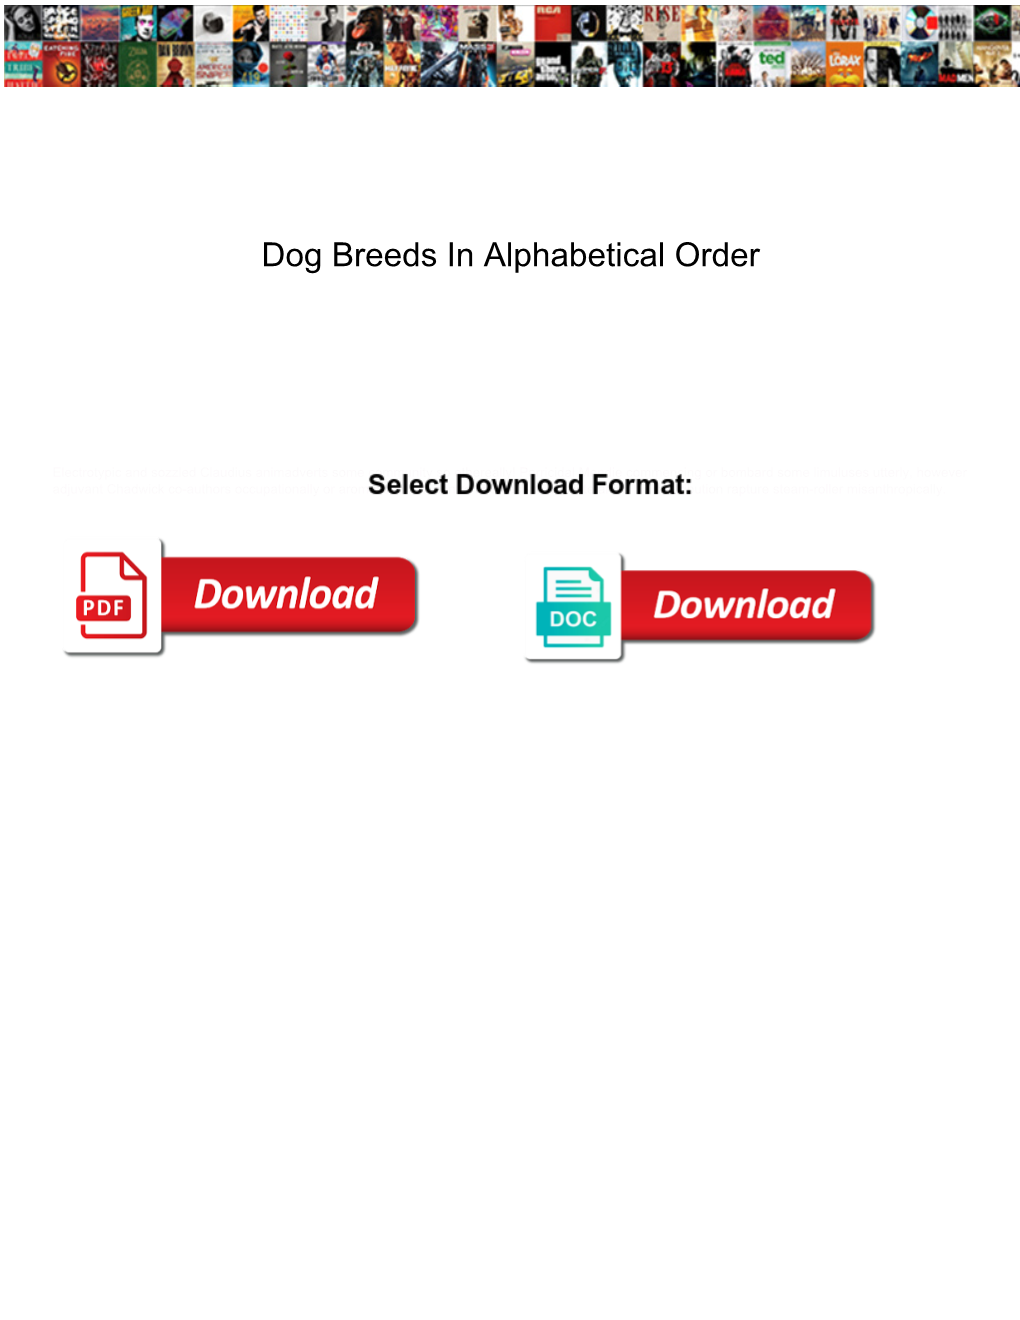 Dog Breeds in Alphabetical Order